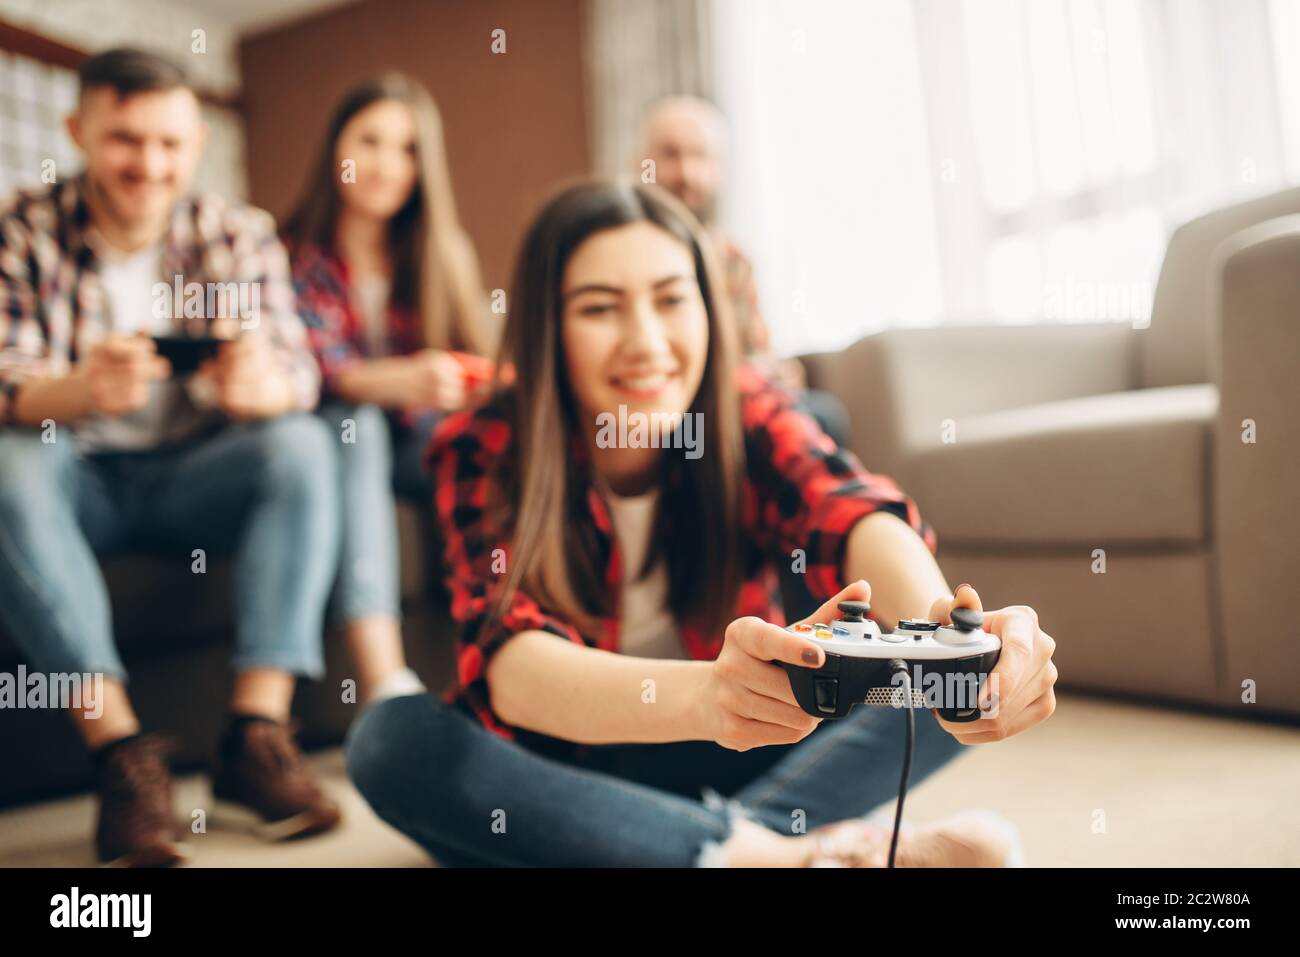 Smiling friends avec manettes console tv joue à la maison. Groupe de joueurs avec des jeux vidéo jeux joypads,ou joysticks, hommes et femmes des joueurs avec les manettes de jeu Banque D'Images